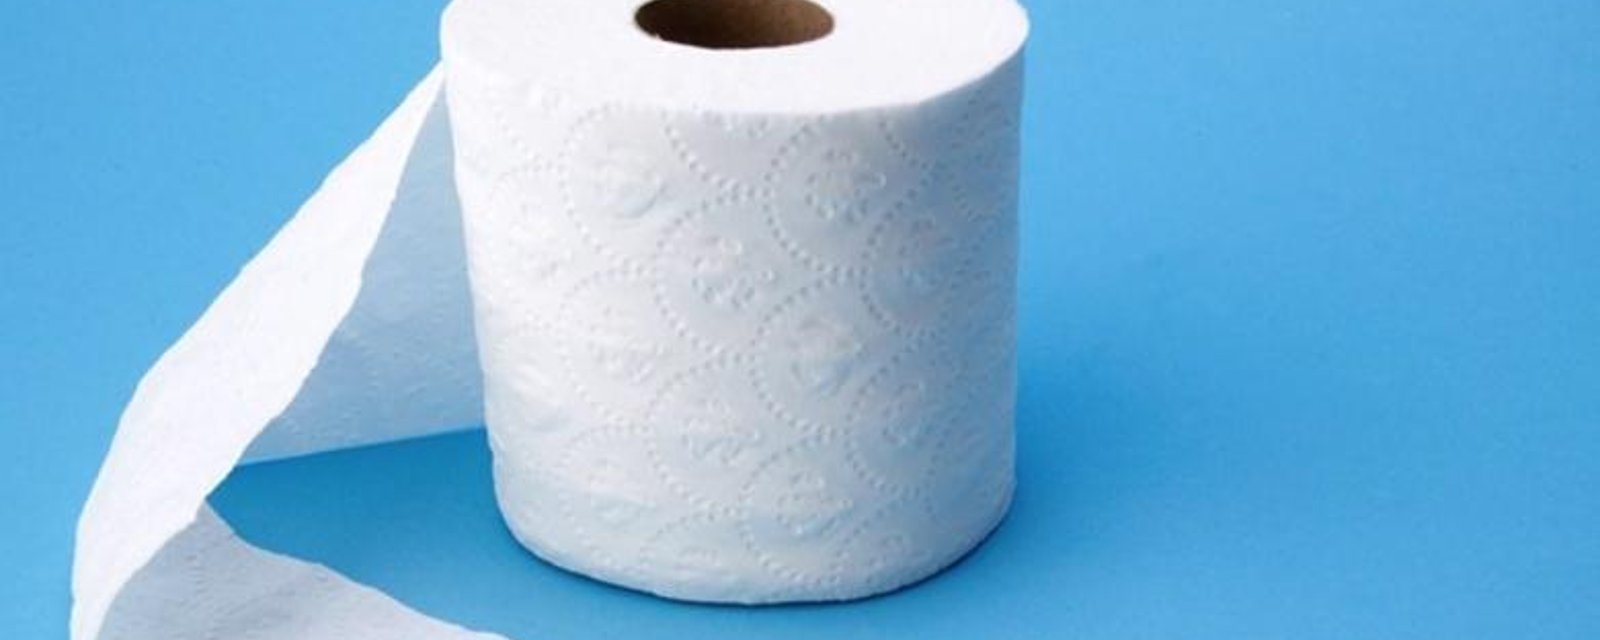 Un schéma vieux de 124 ans révèle la vraie façon d'utiliser le papier de toilette!